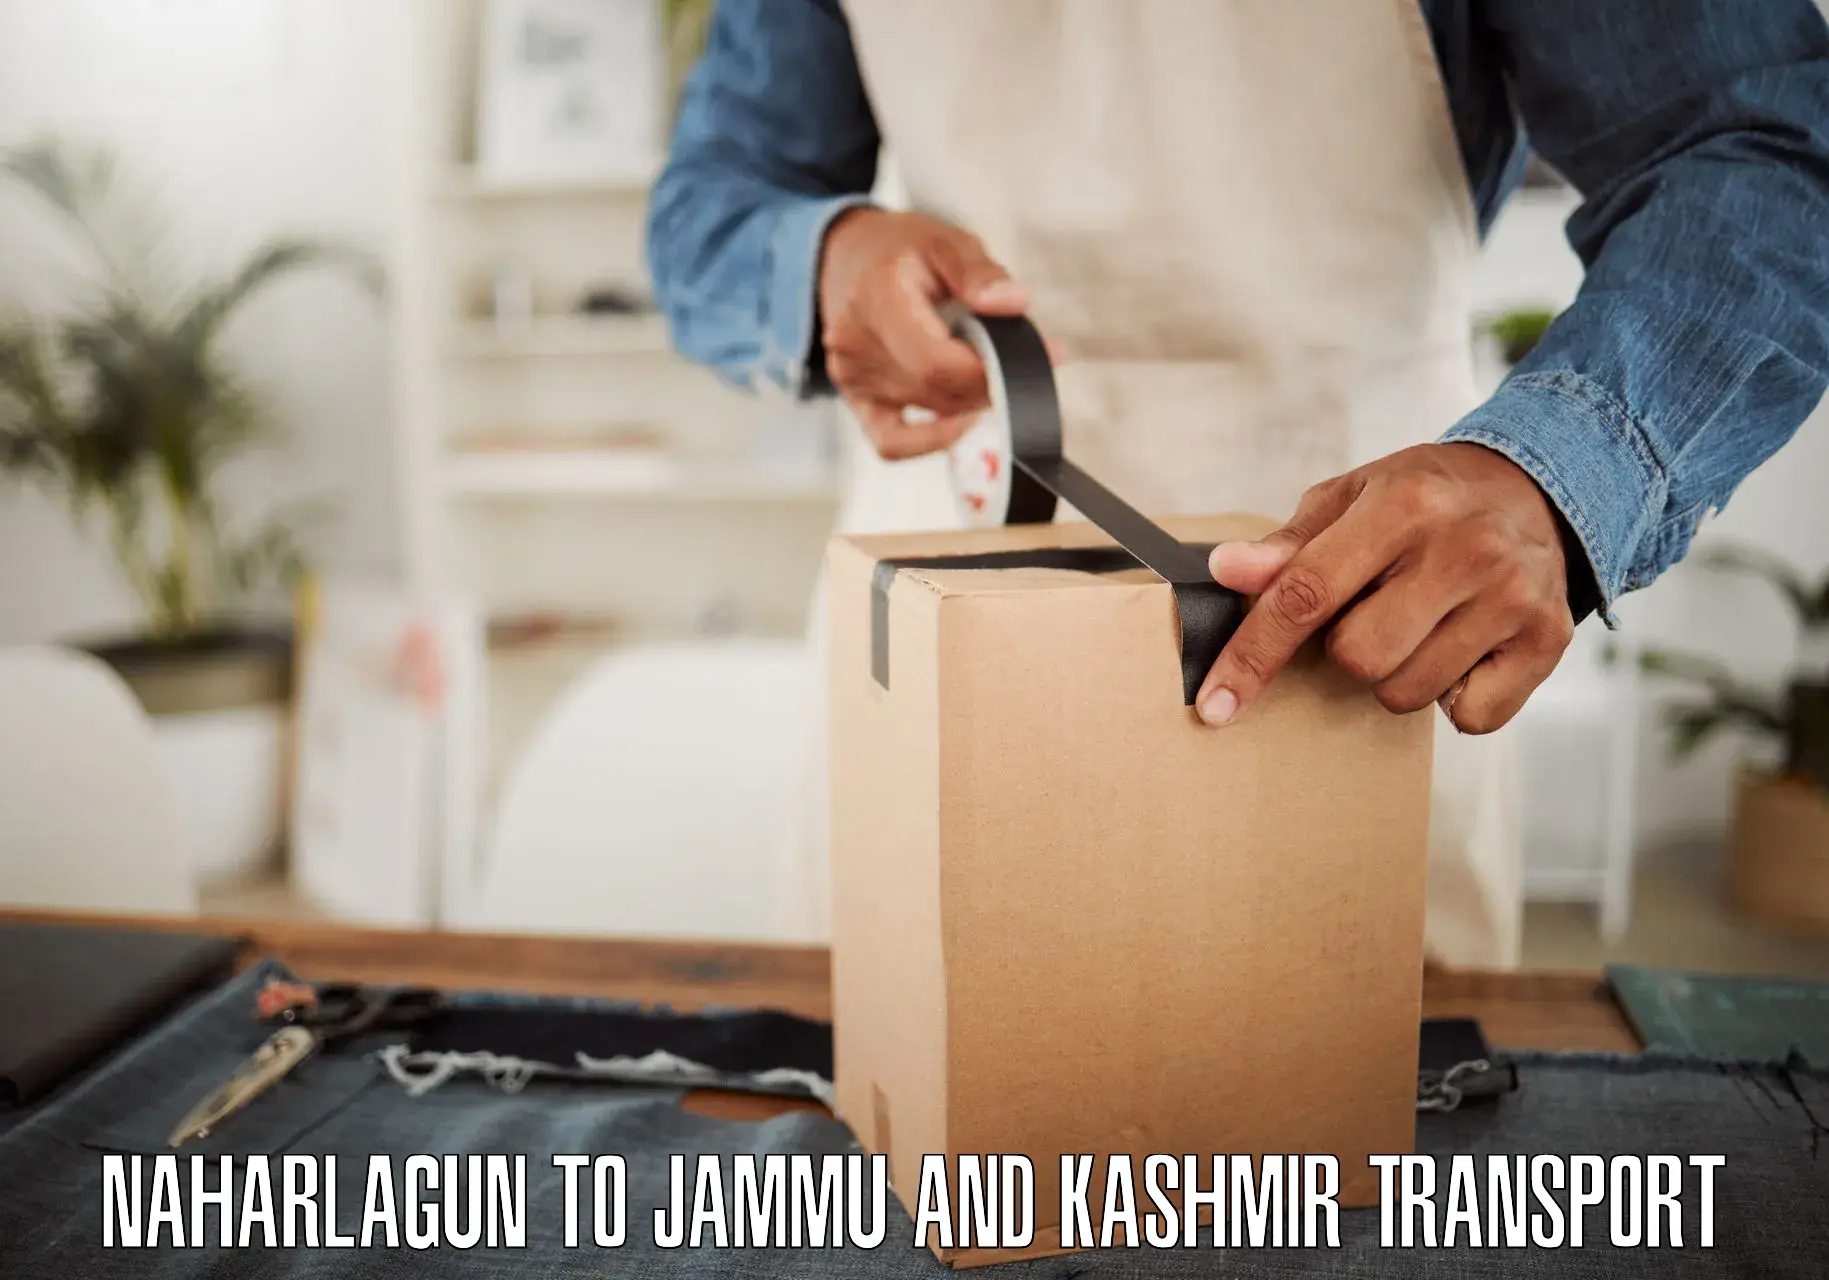 Express transport services Naharlagun to Jammu and Kashmir